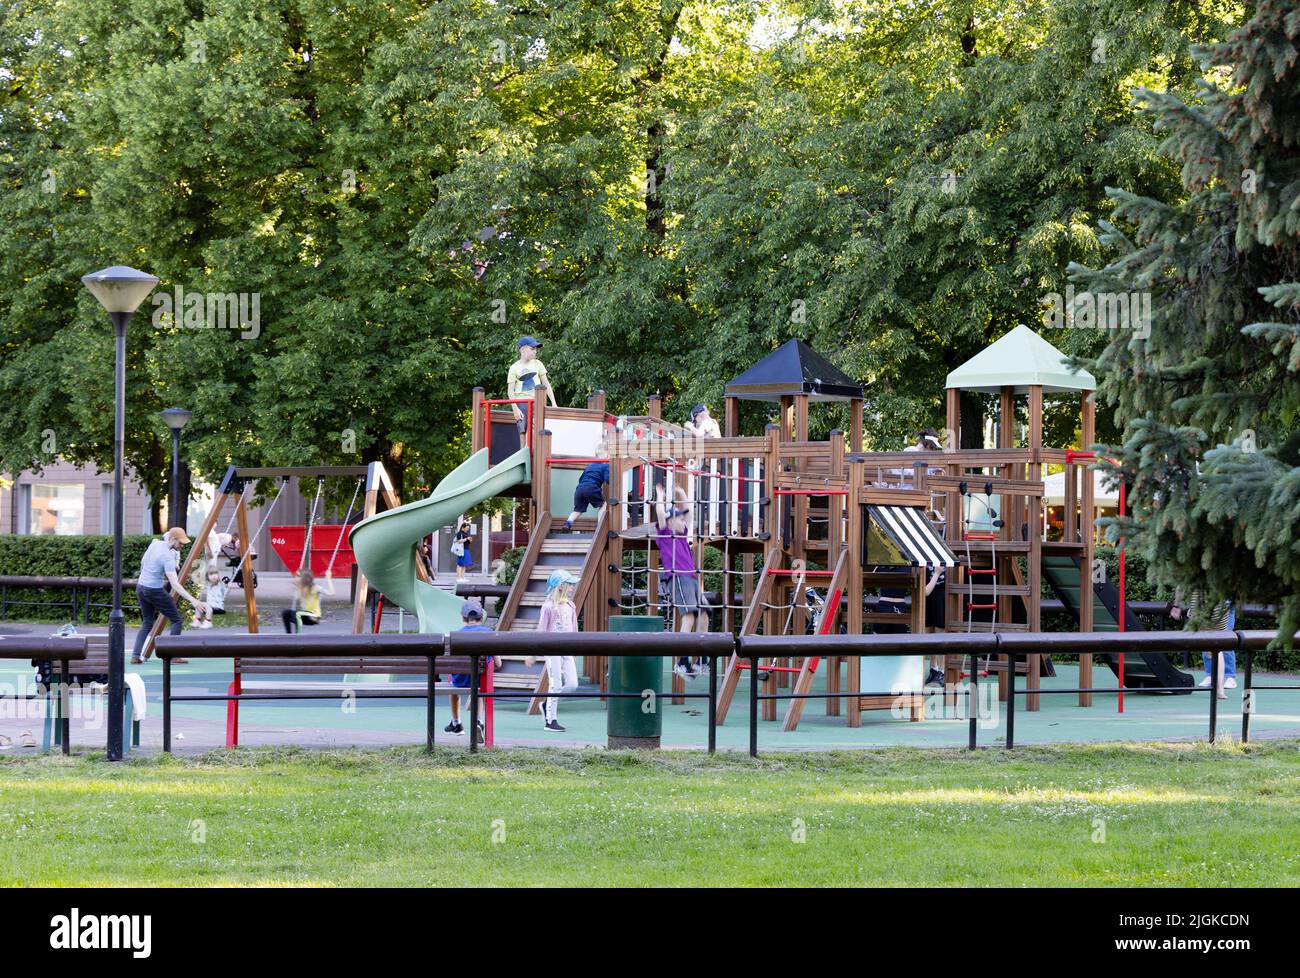 Estonia bambini; giovani bambini di età compresa tra i 5-10 anni che giocano in un parco giochi per bambini o in un'area giochi, Tartu, Estonia, Europa Foto Stock